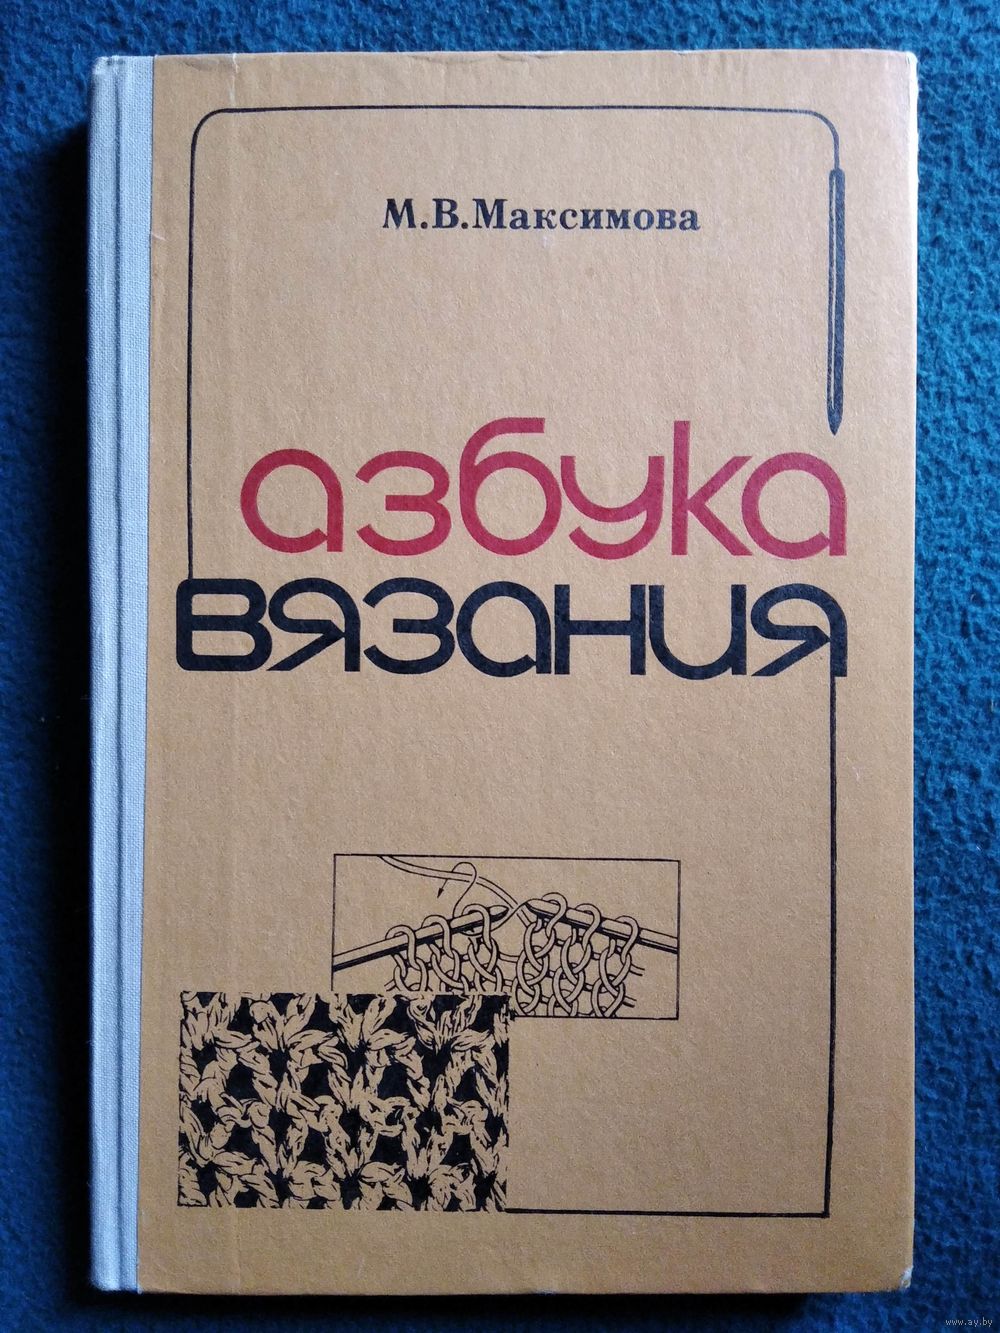 Азбука вязания, М. В. Максимова | Купичитай IT книги (купи читай, купи-читай)